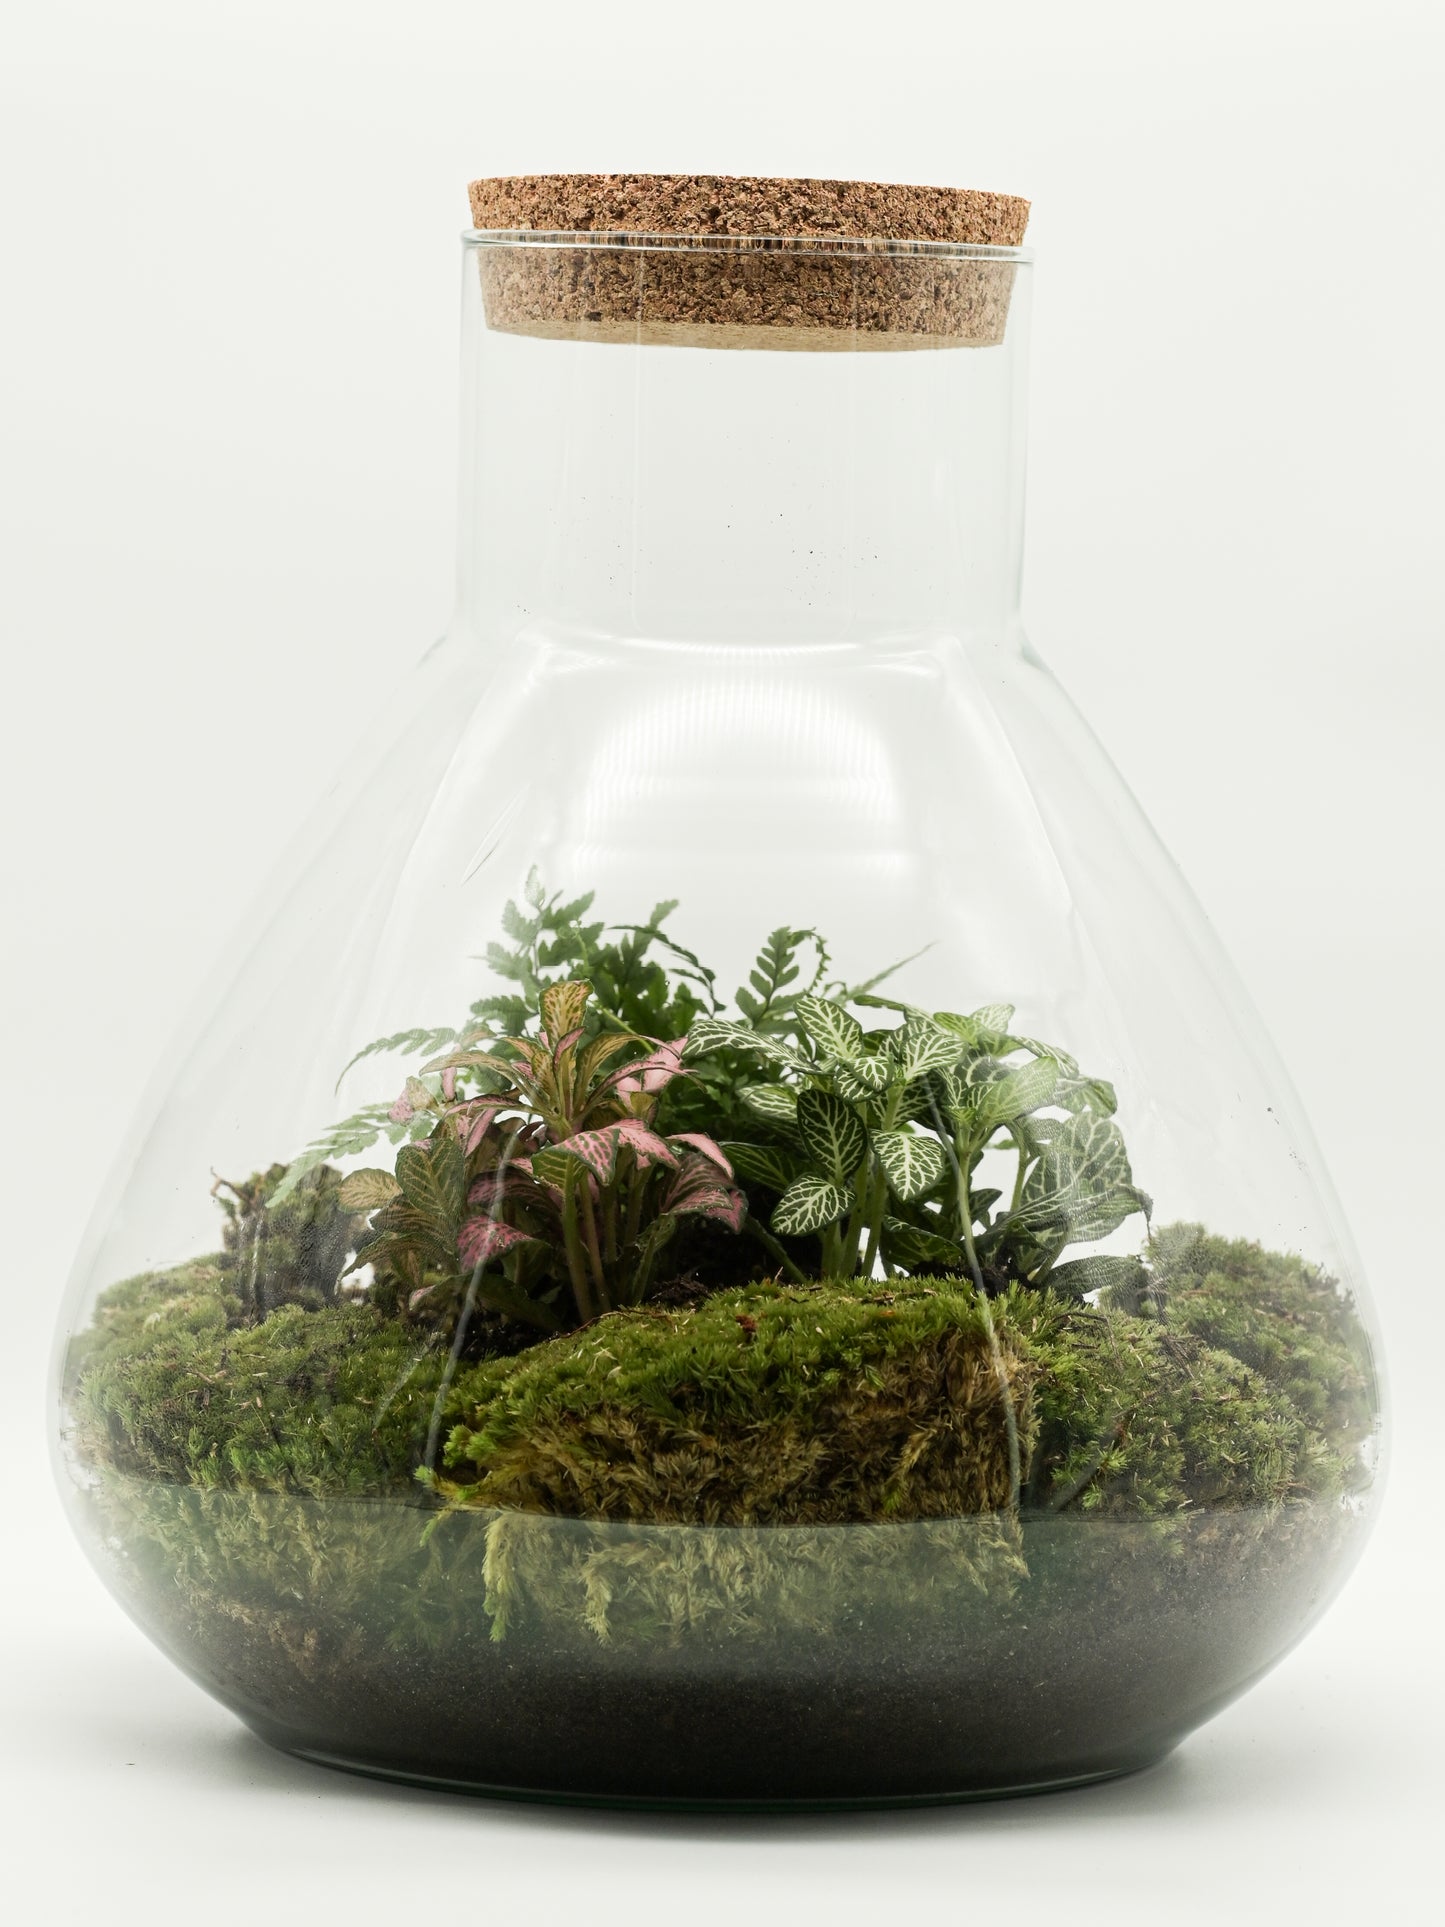 Flaschengarten "Elly XL" Jungle Set - Pflanzen Ökosystem im Glas ↥35 cm / ⌀29 cm